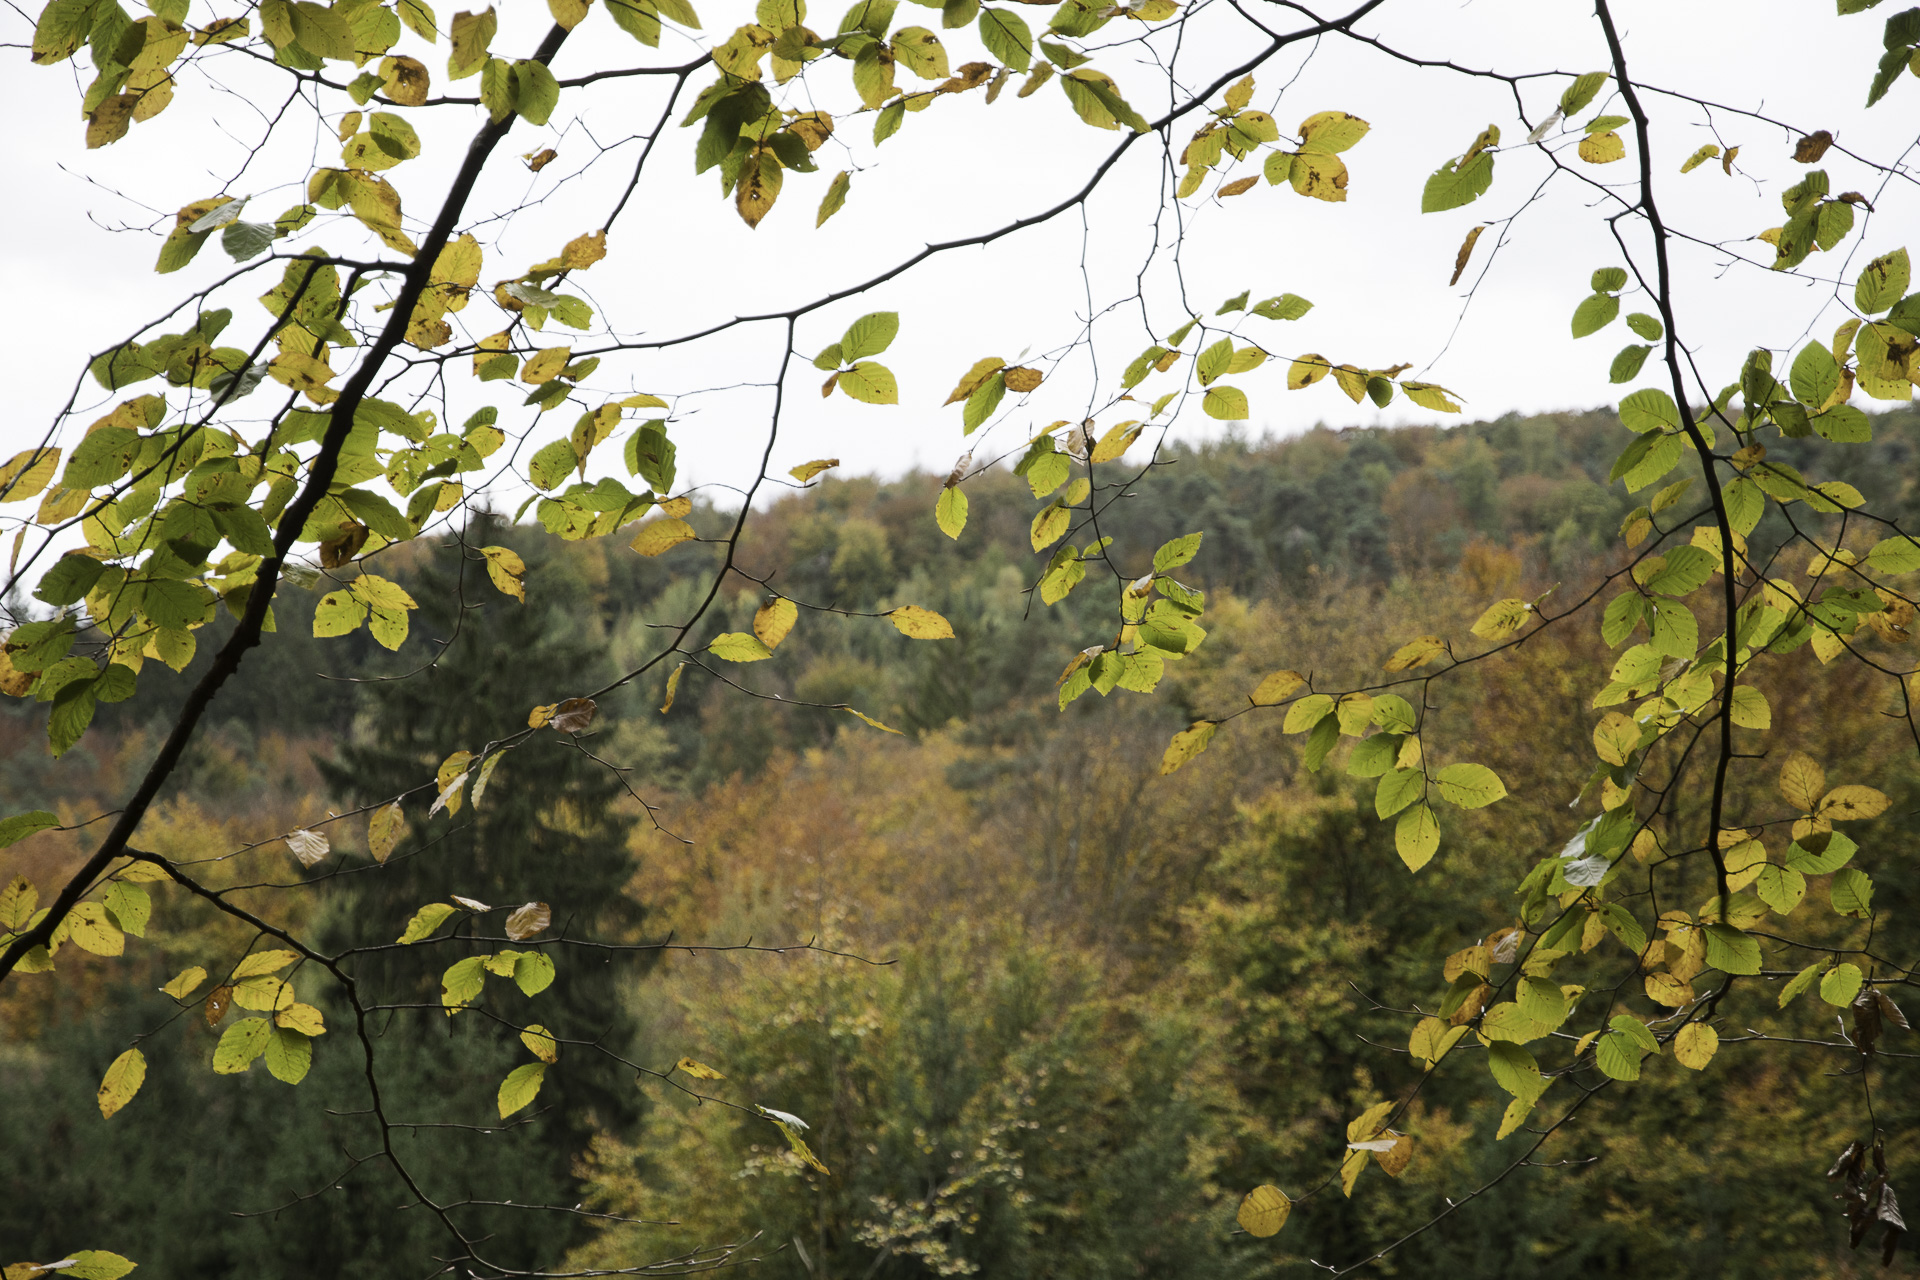 November Stimmung - Herbststimmung im Wald mit bunten Blättern im Sonnenlicht im Vordergrund und Bäumen in herbstlichen Farben im Hintergrund